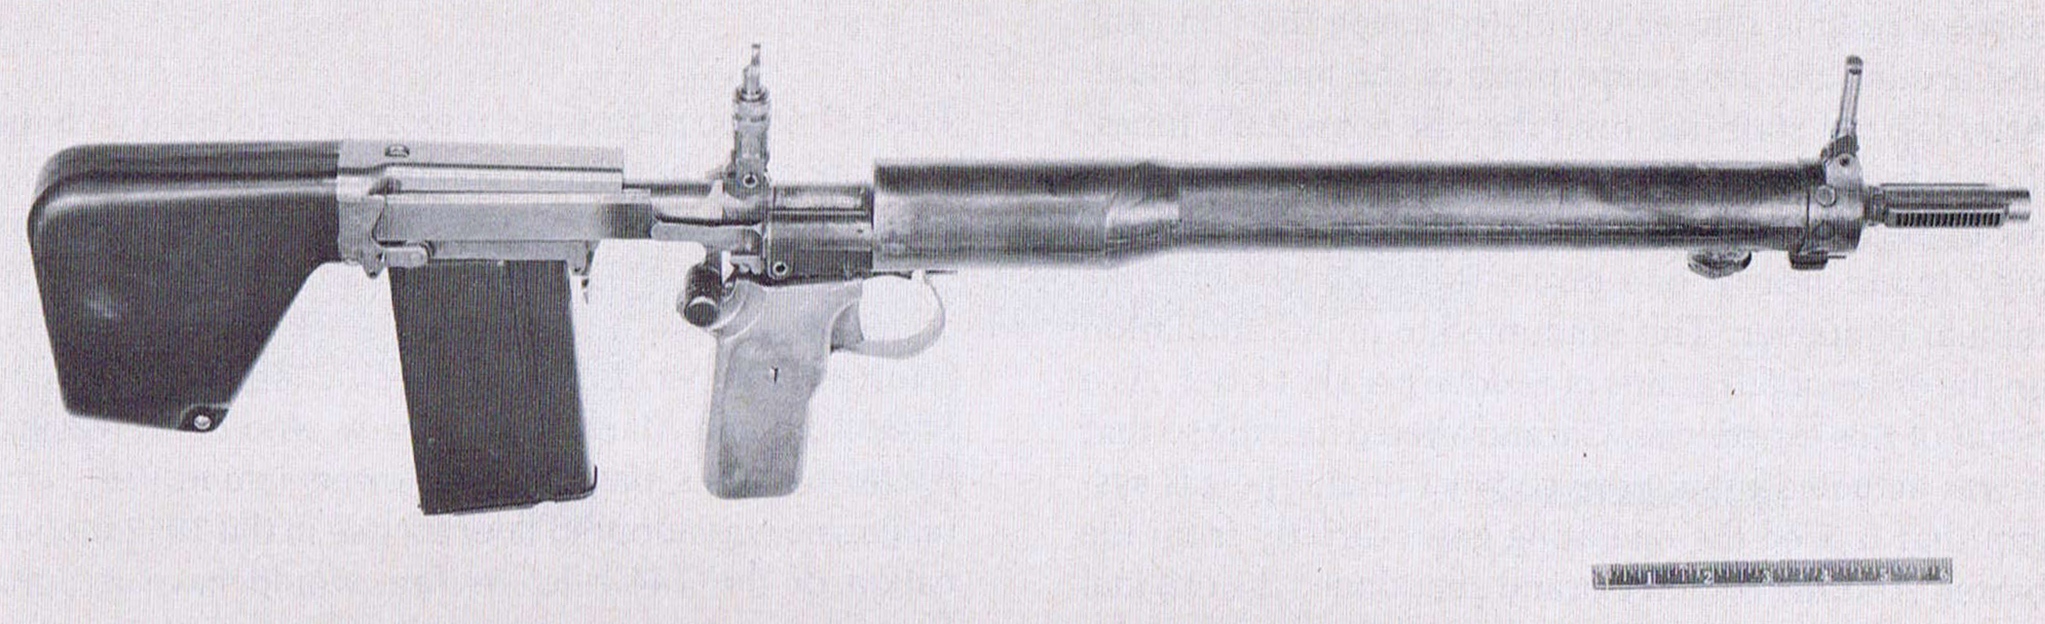 Garand T31 experimental bullpup rifle (first model) - Forgot